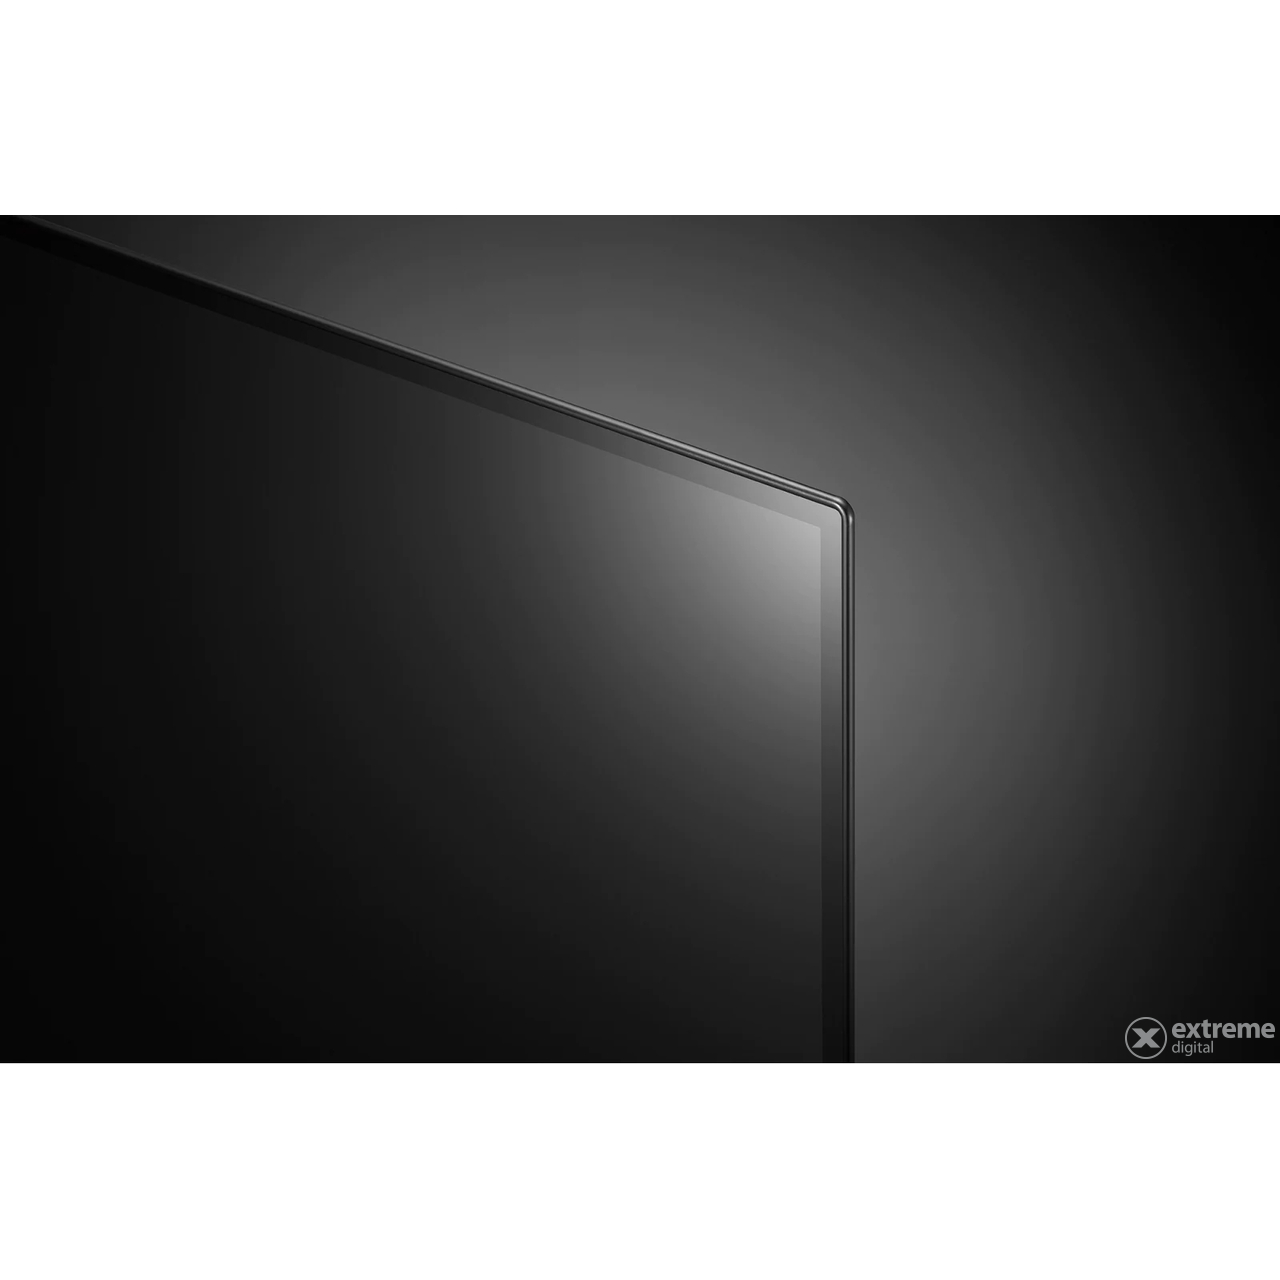 LG OLED48C22LB OLED 4K Ultra HD, HDR, webOS ThinQ AI EVO Smart TV, 121 cm